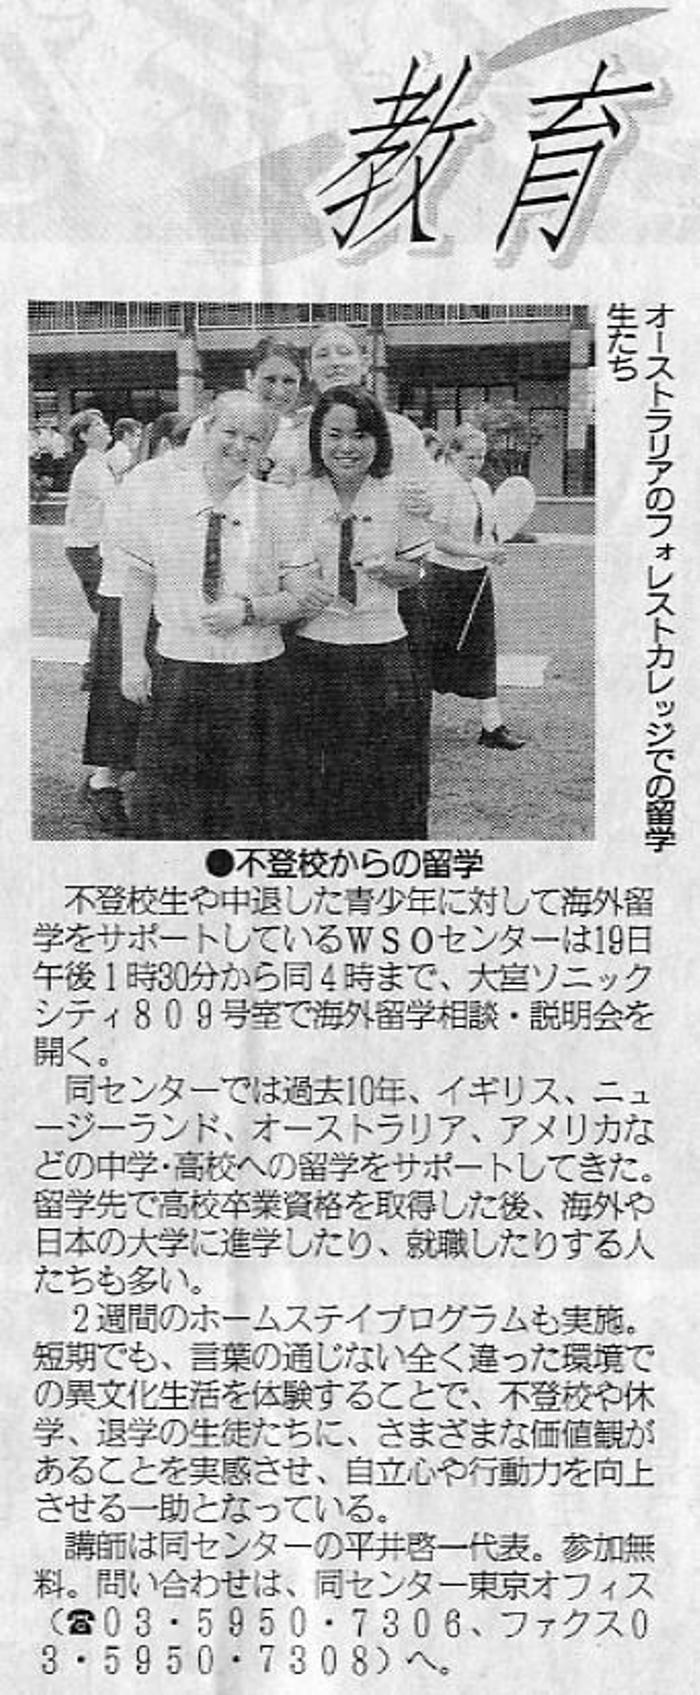 2004年6月16日の埼玉新聞での掲載記事